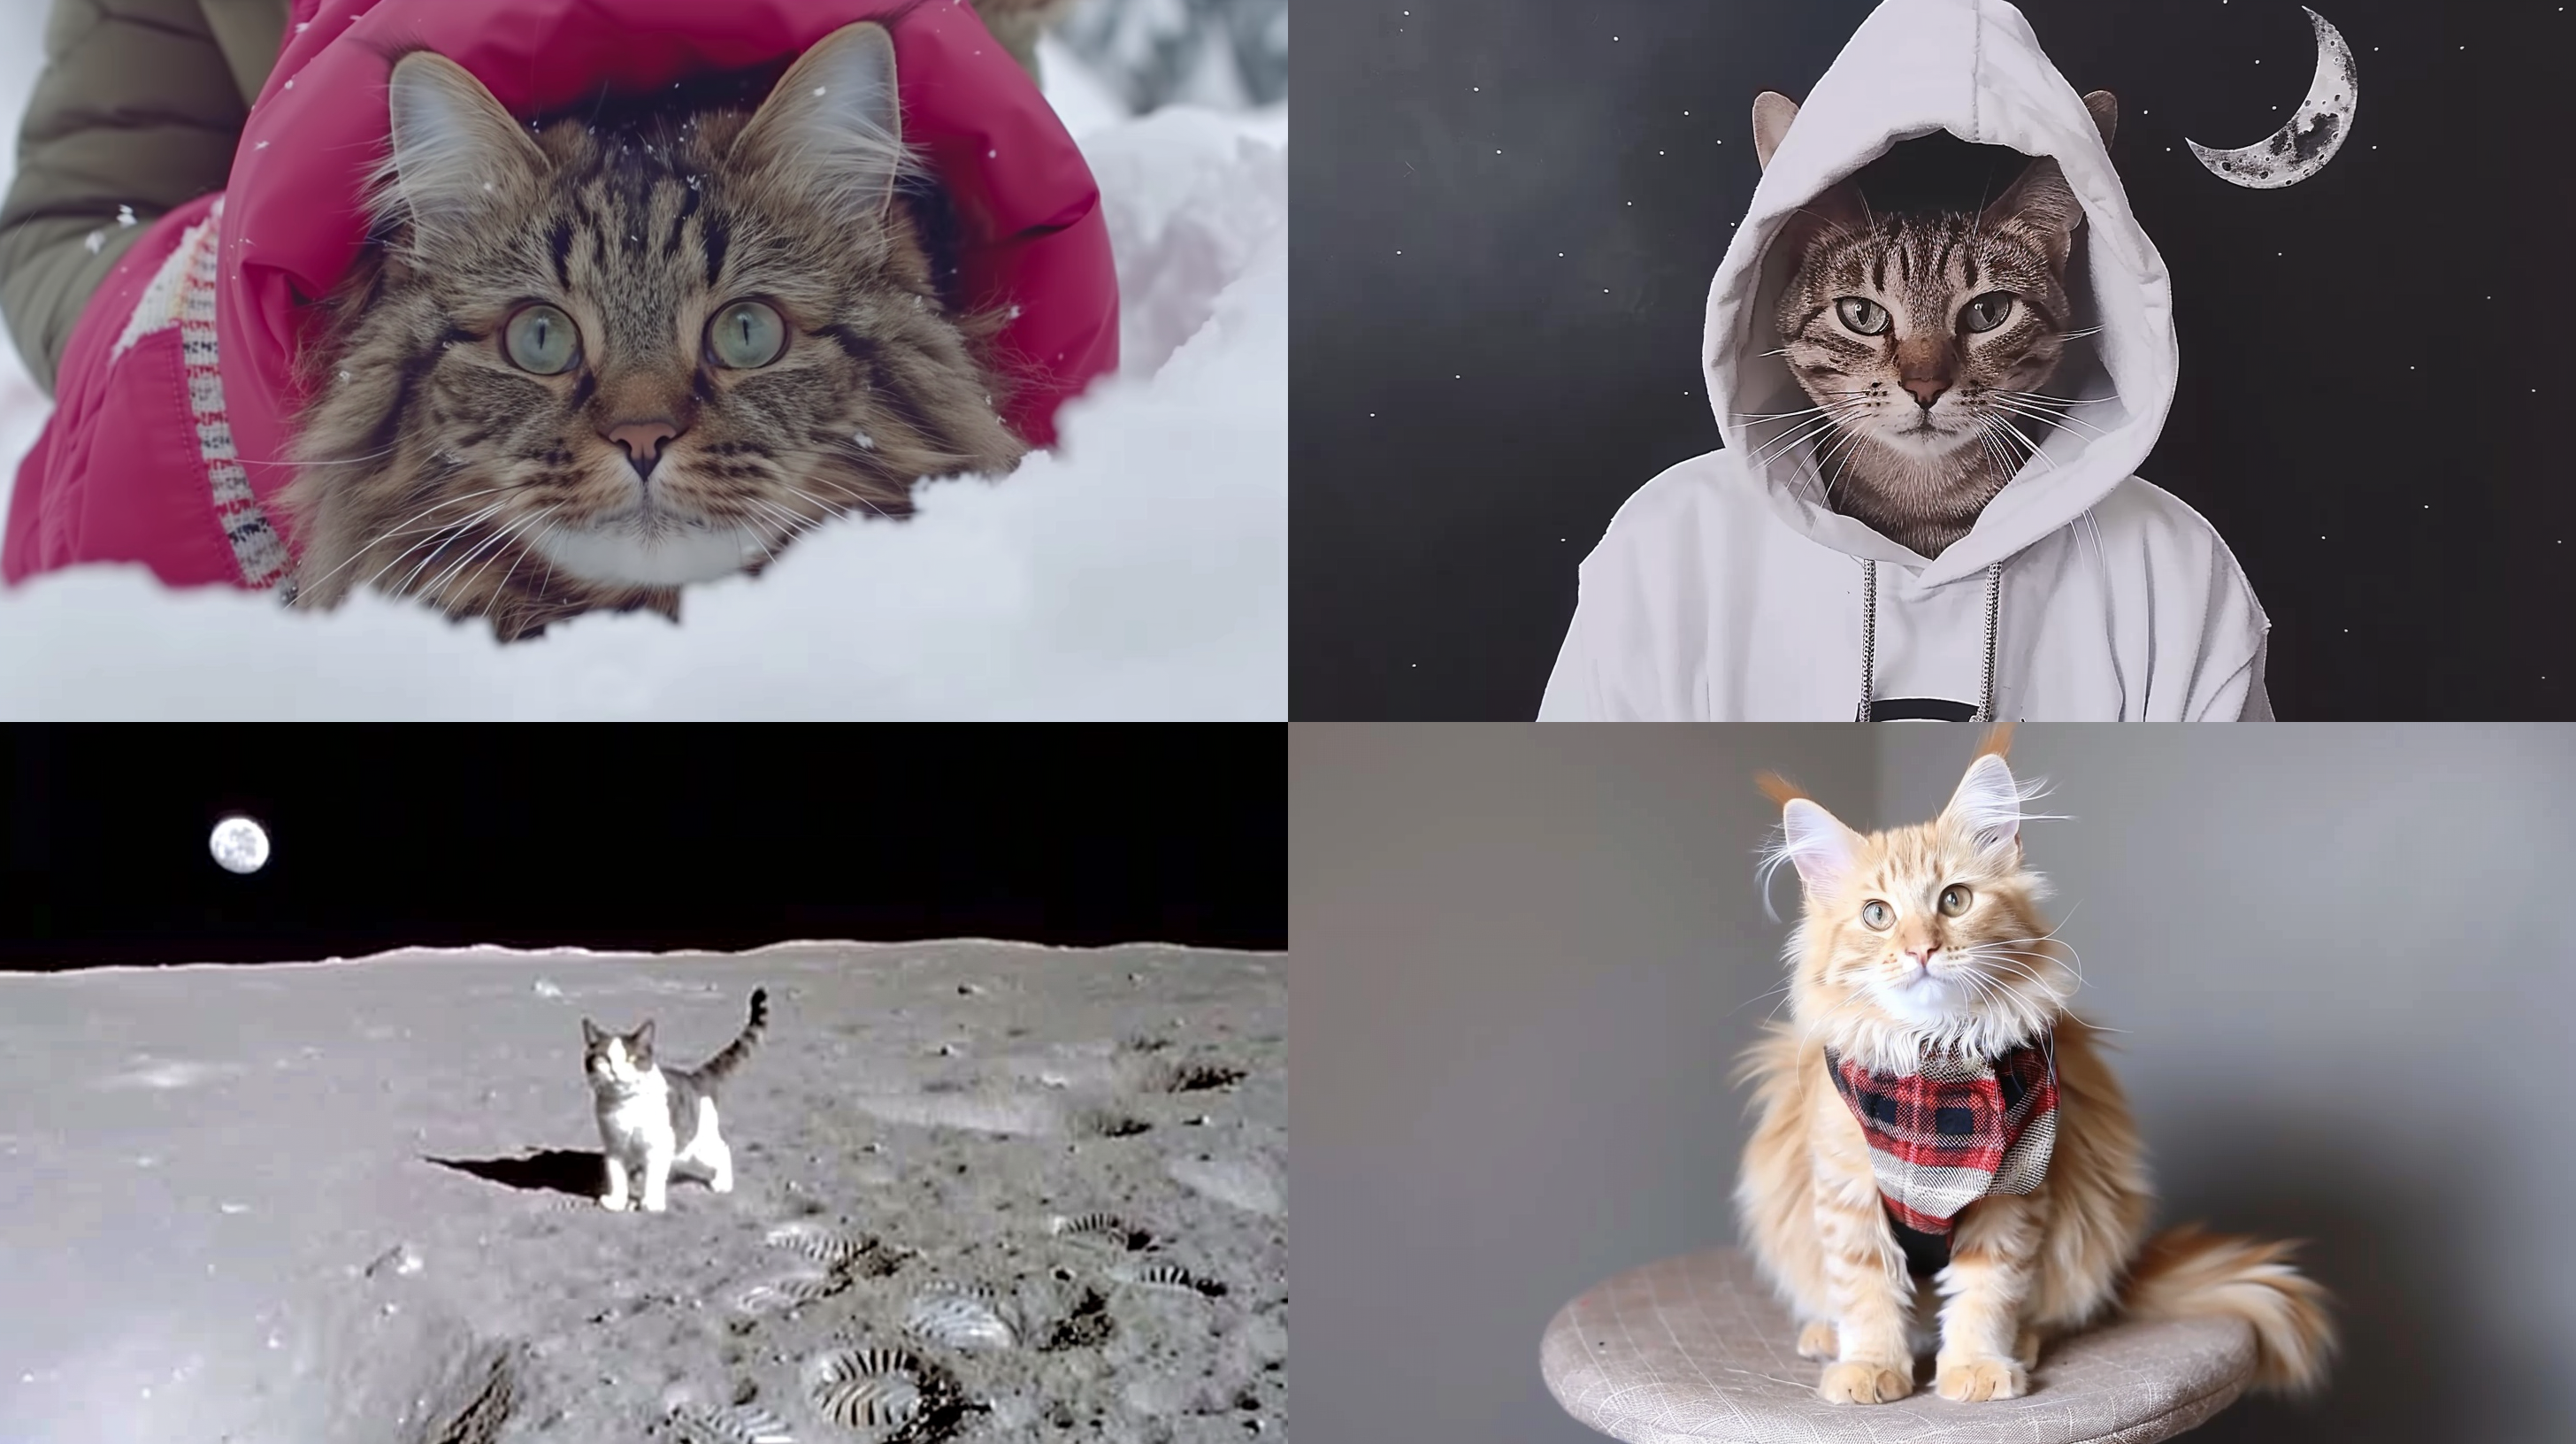 Kaos değeri yüksek, aydaki kedilerin yolculuk ortası görüntüleri